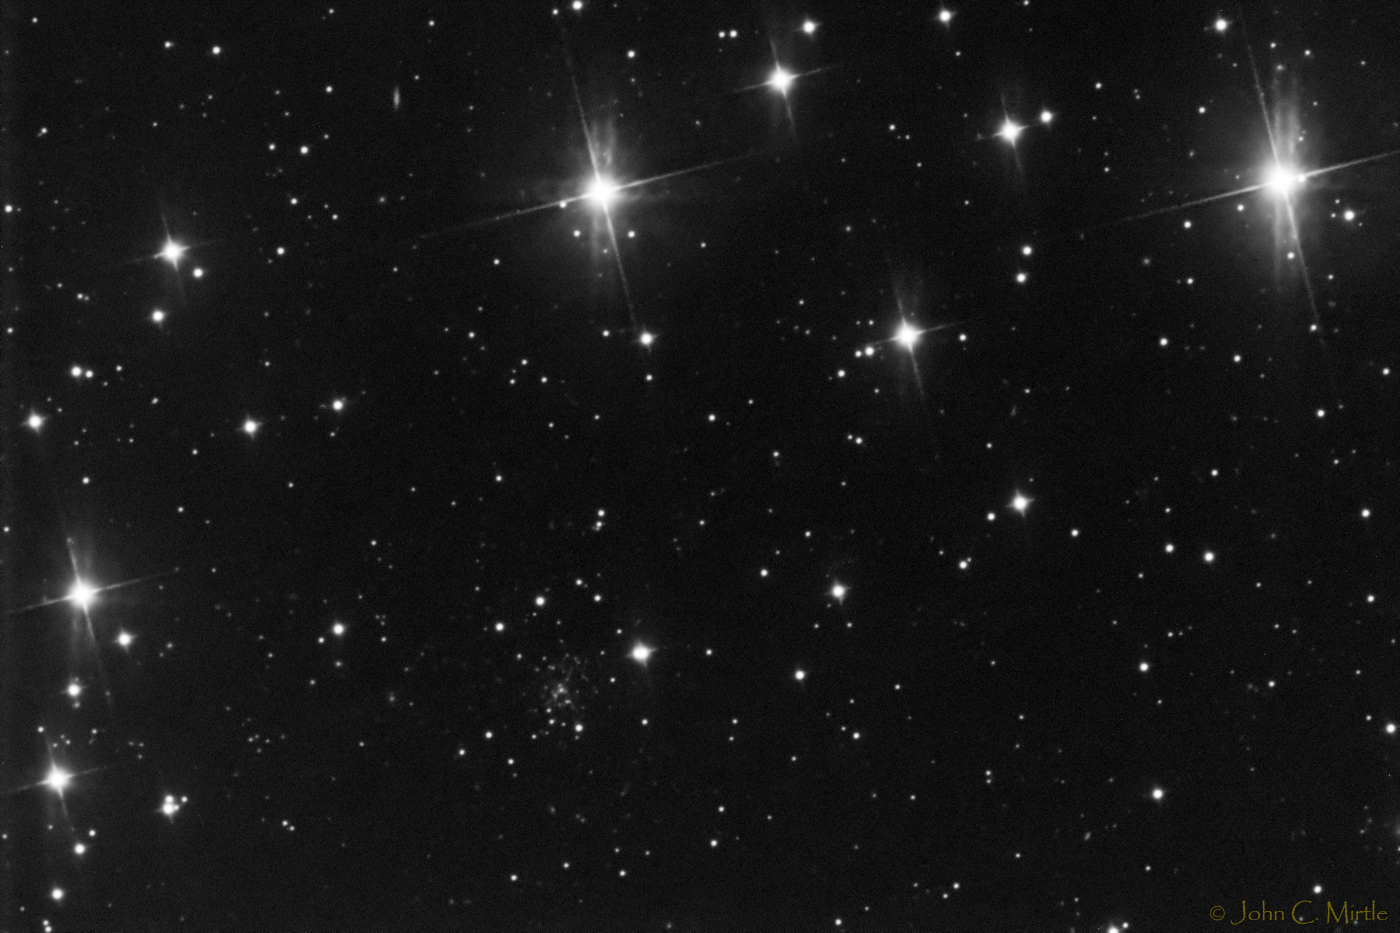 Globular Palomar 13 in Pegasus